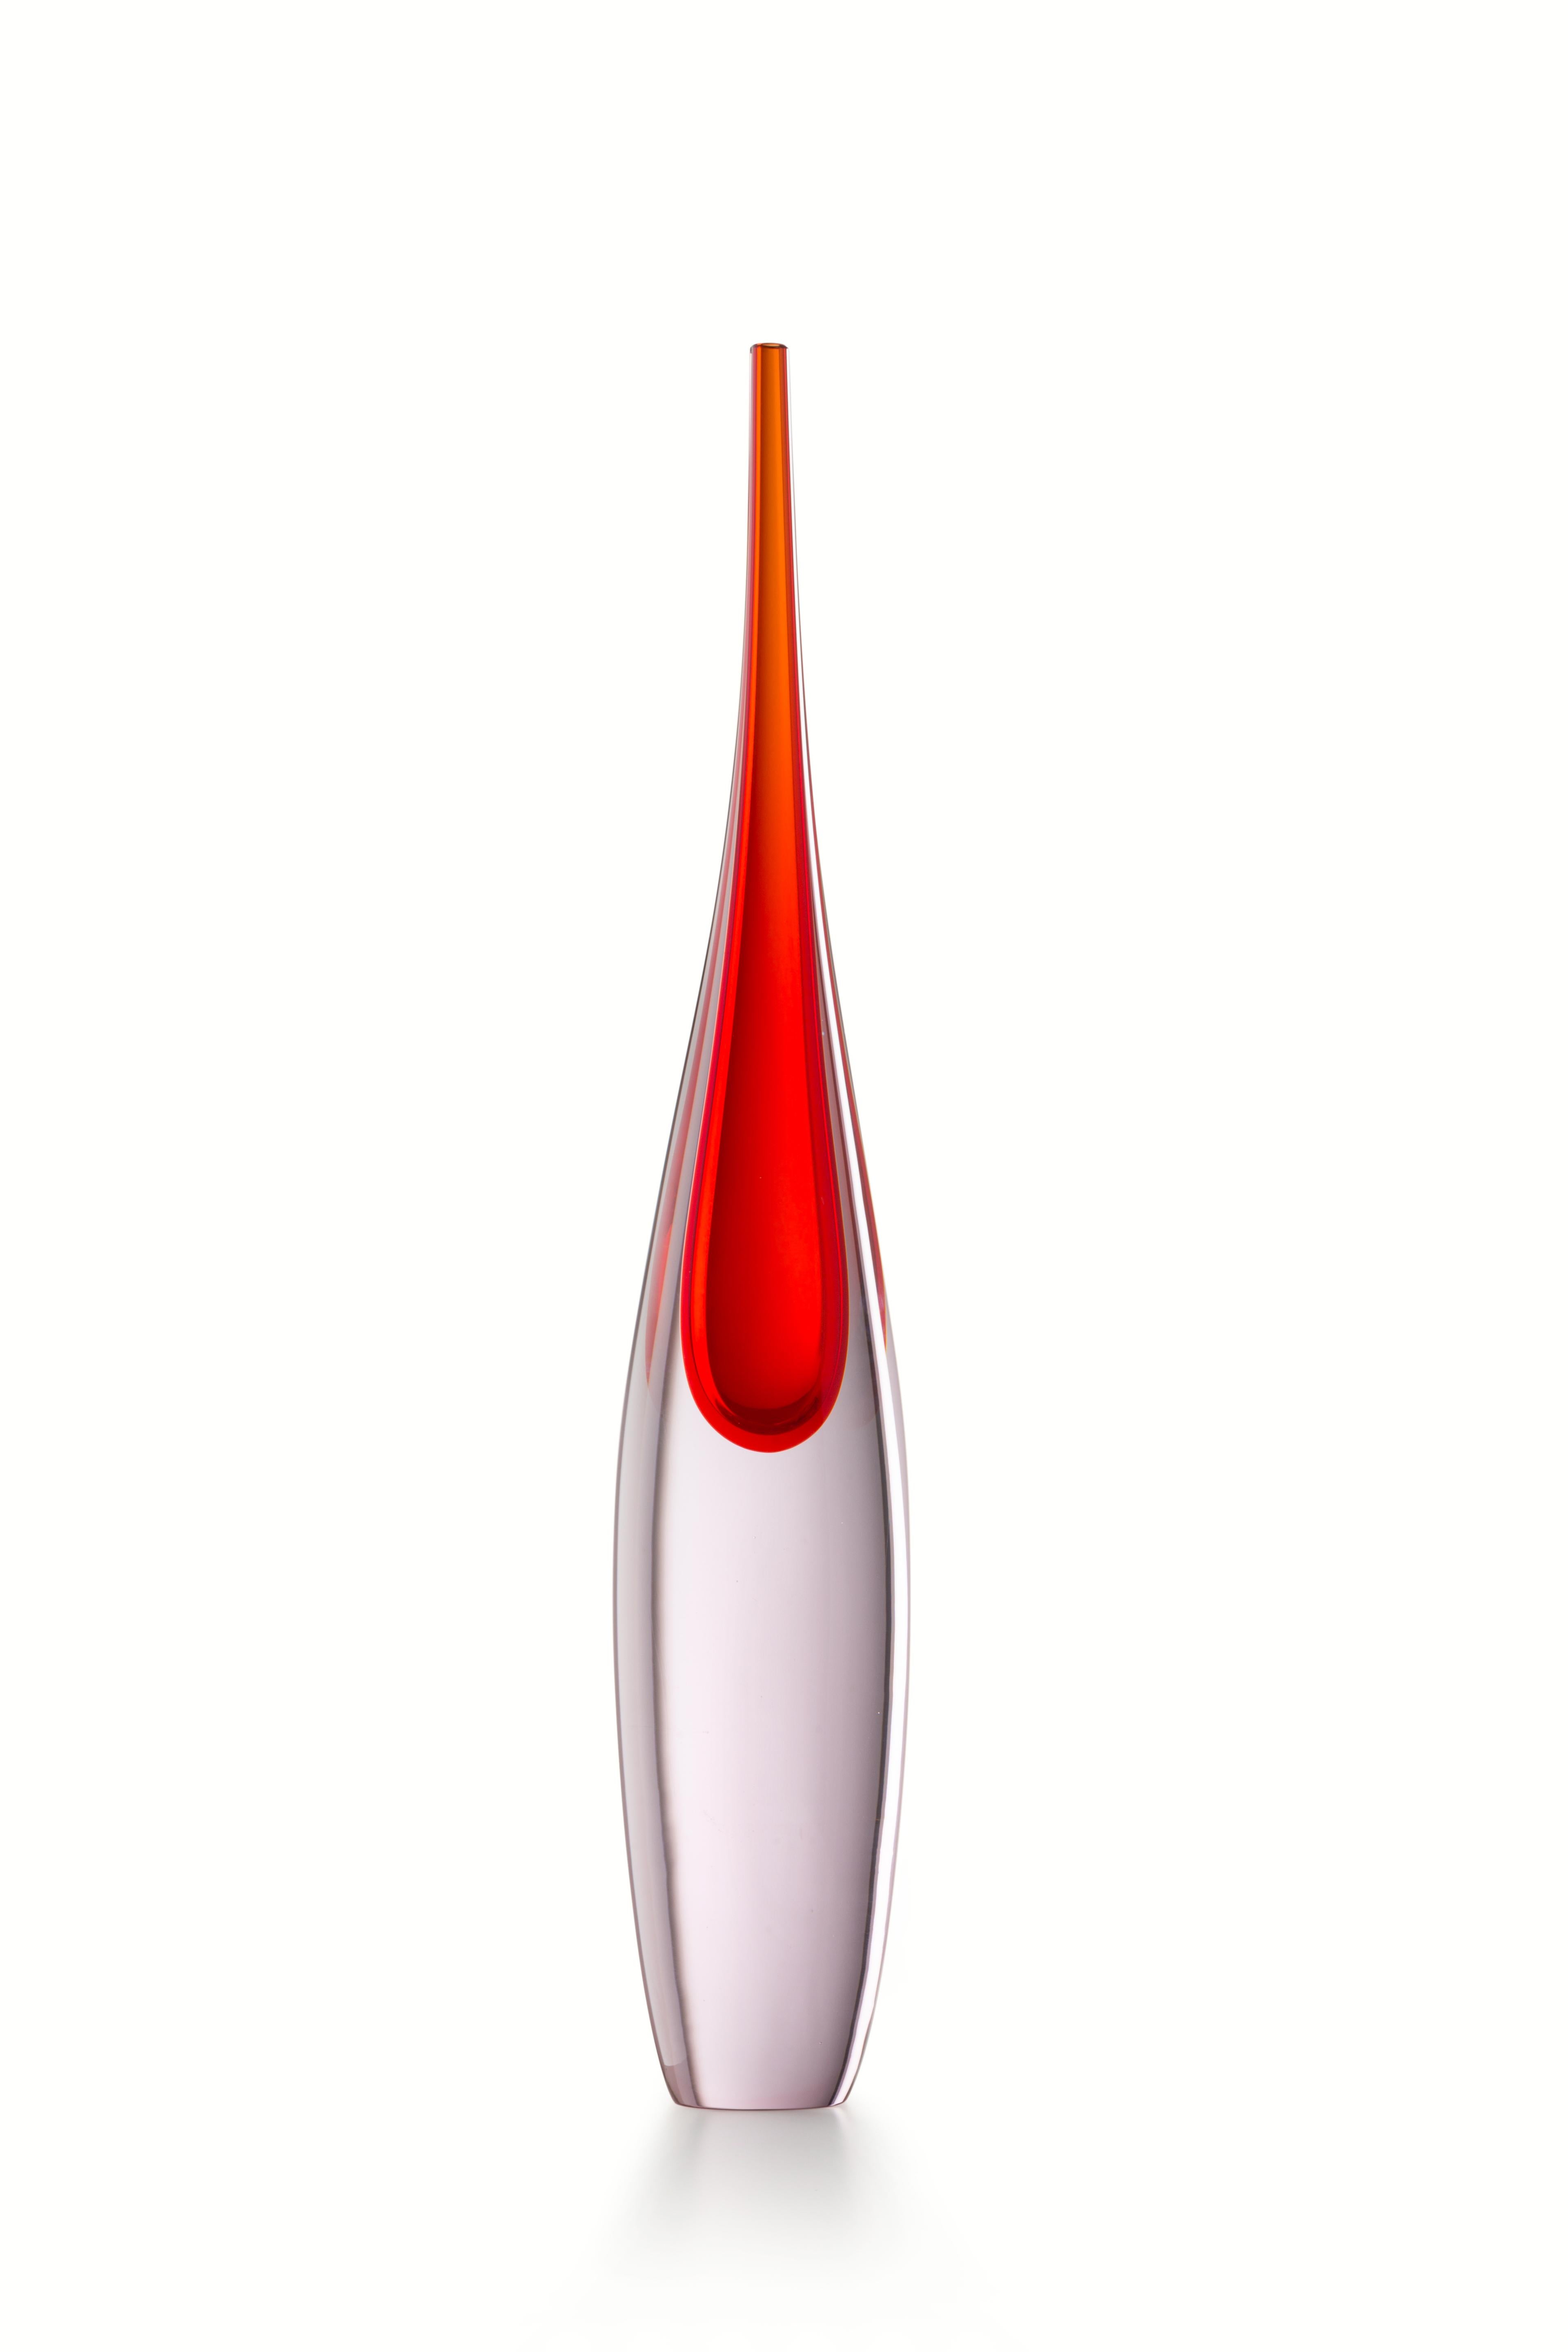 For Sale: Red (01986) Medium Pinnacoli Rosa Murano Glass Vase by Luciano Gaspari